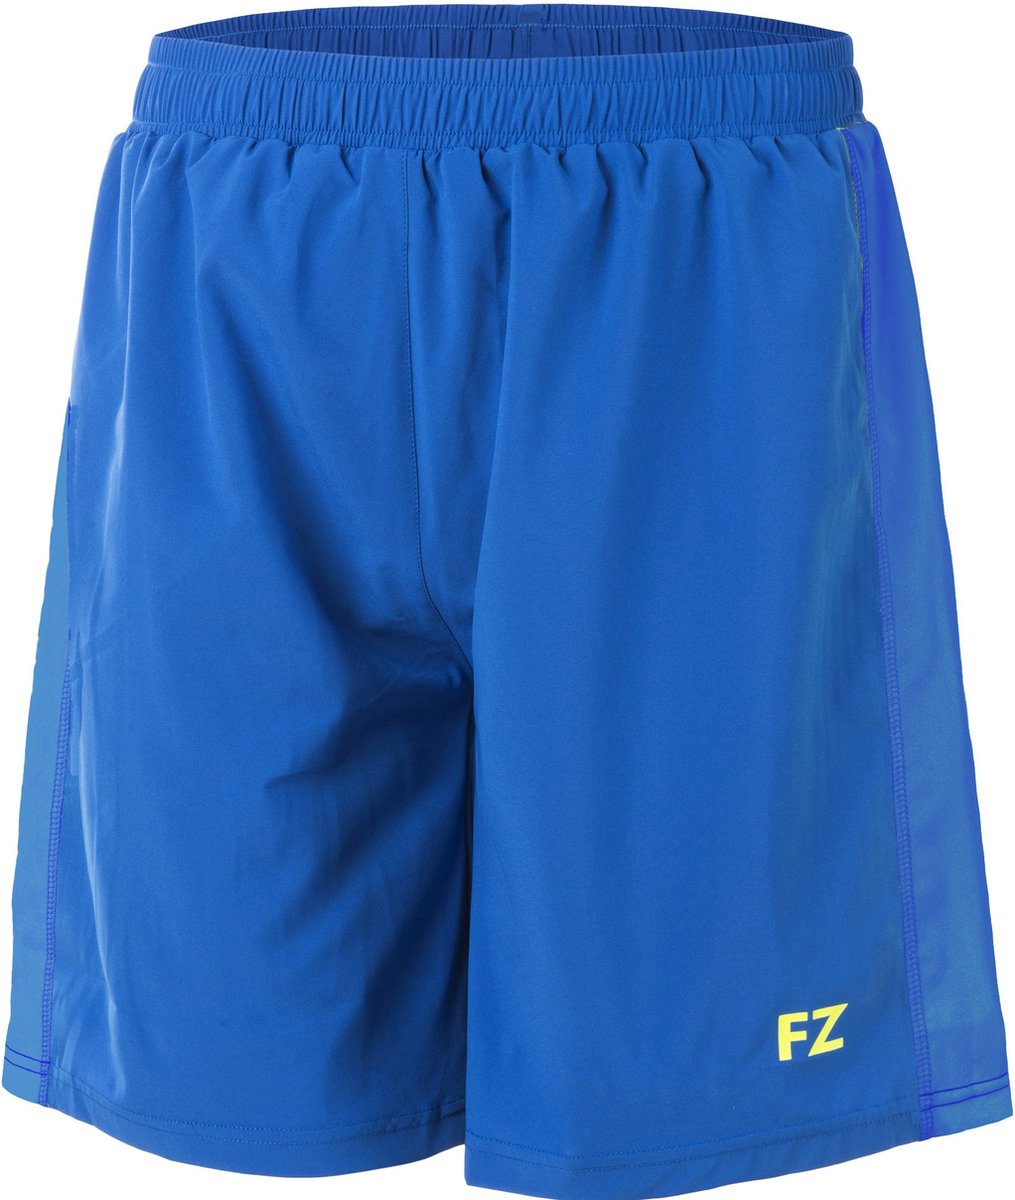 FZ Forza Bahia Rio shorts